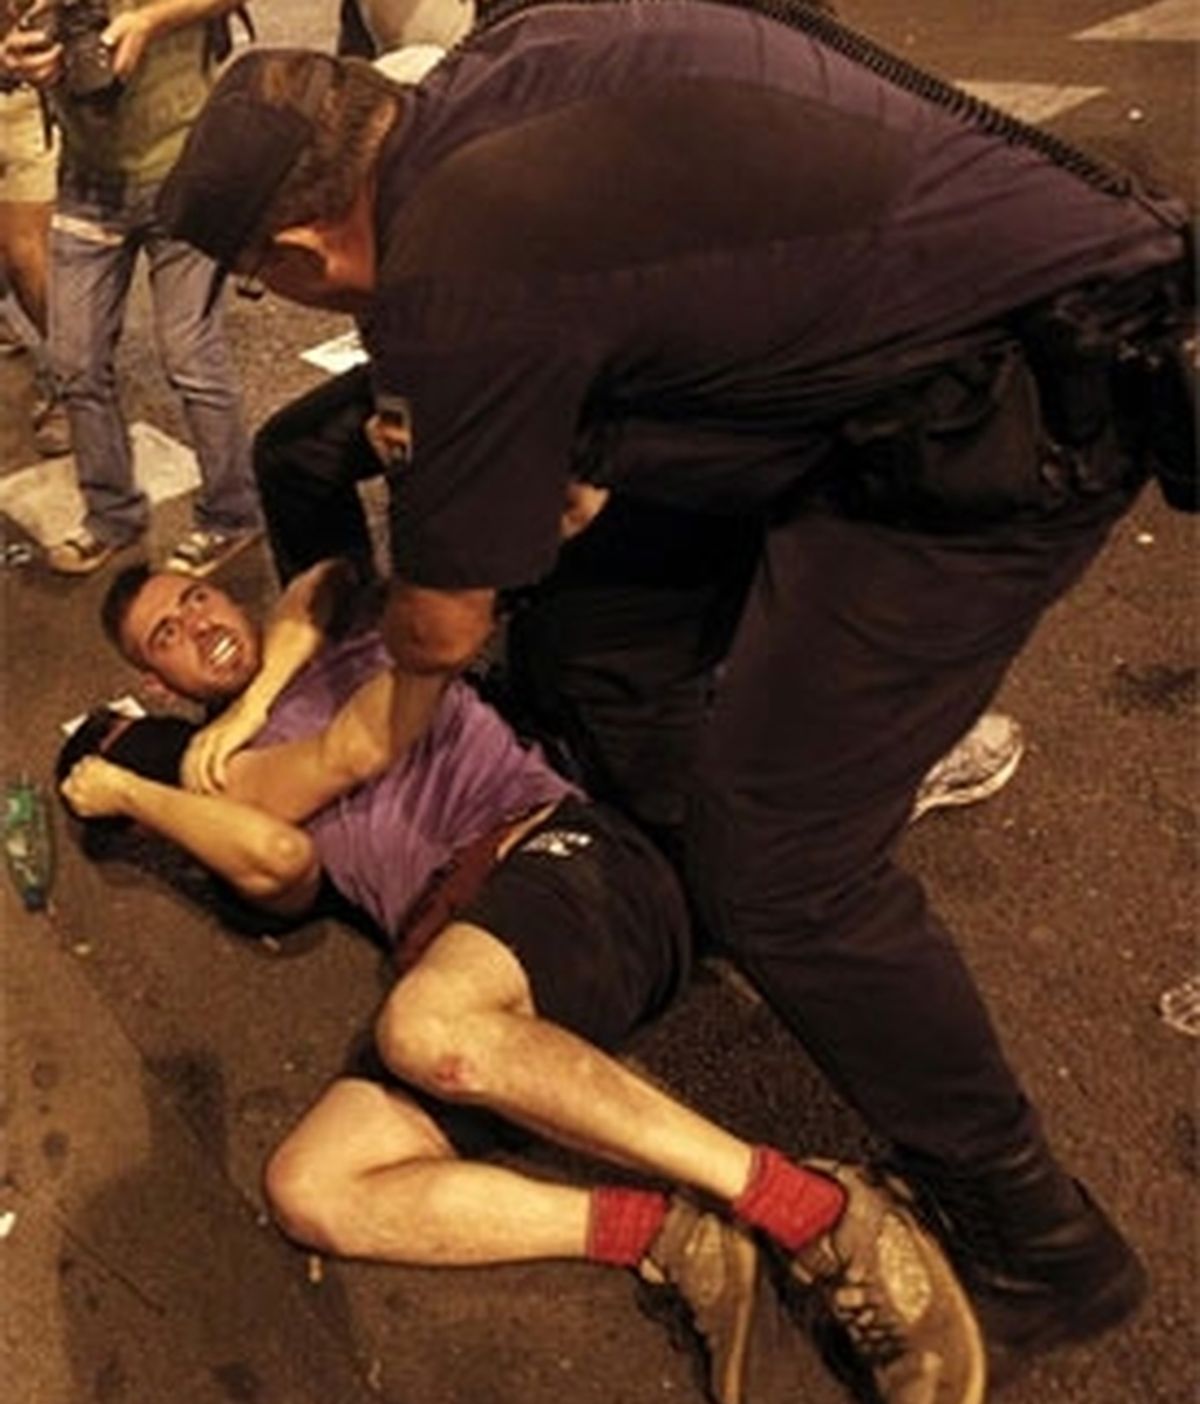 La Policía carga contra manifestantes contrarios a la Jornada Mundial de la Juventud. Vídeo: Informativos Telecinco.